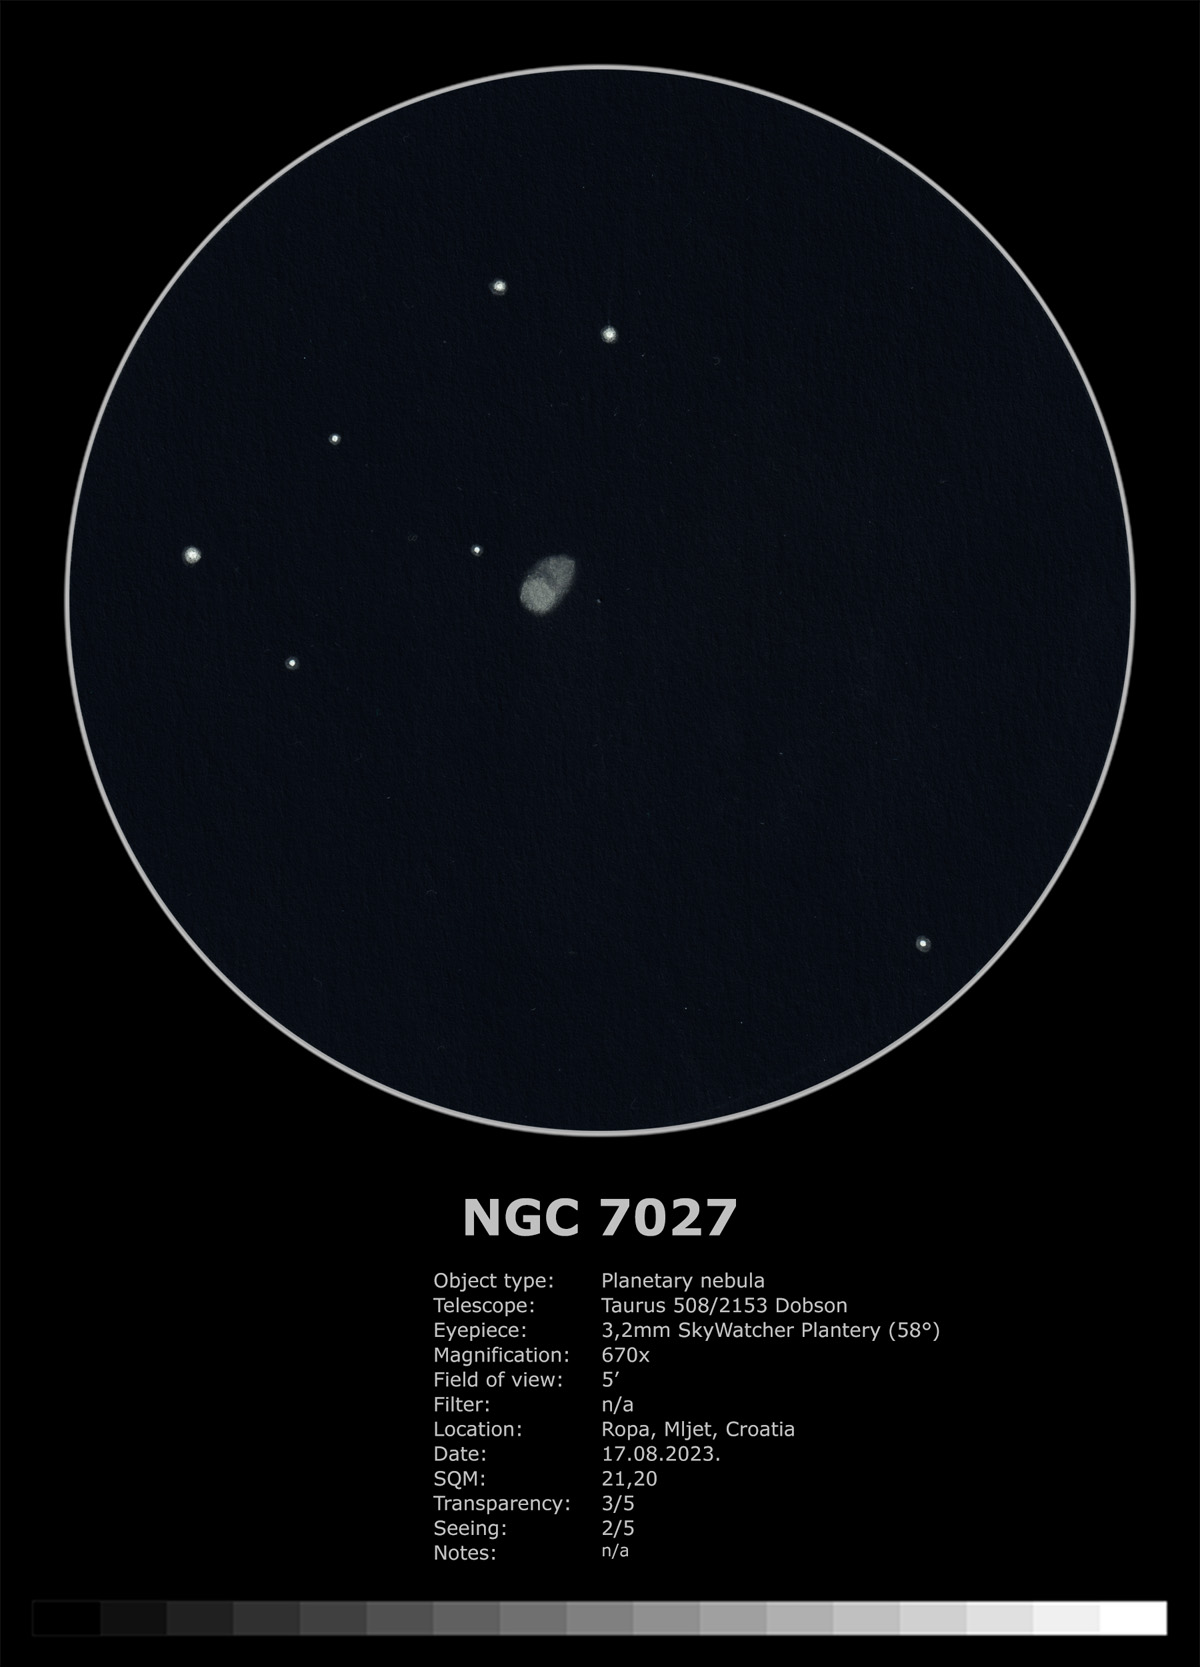 Sketch of planetary nebula NGC 7027